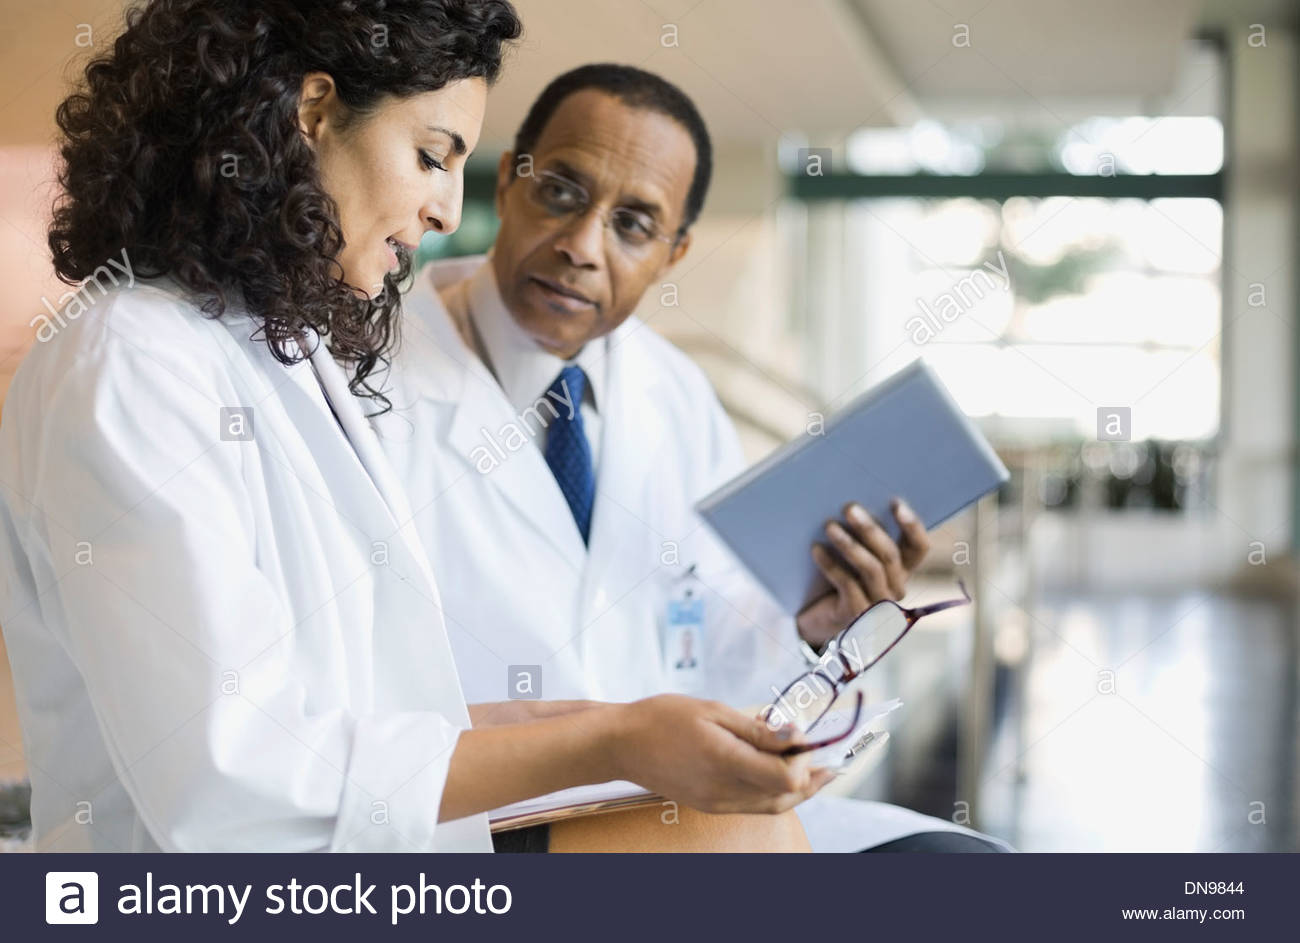 Los médicos examinar resultados médicos Foto de stock